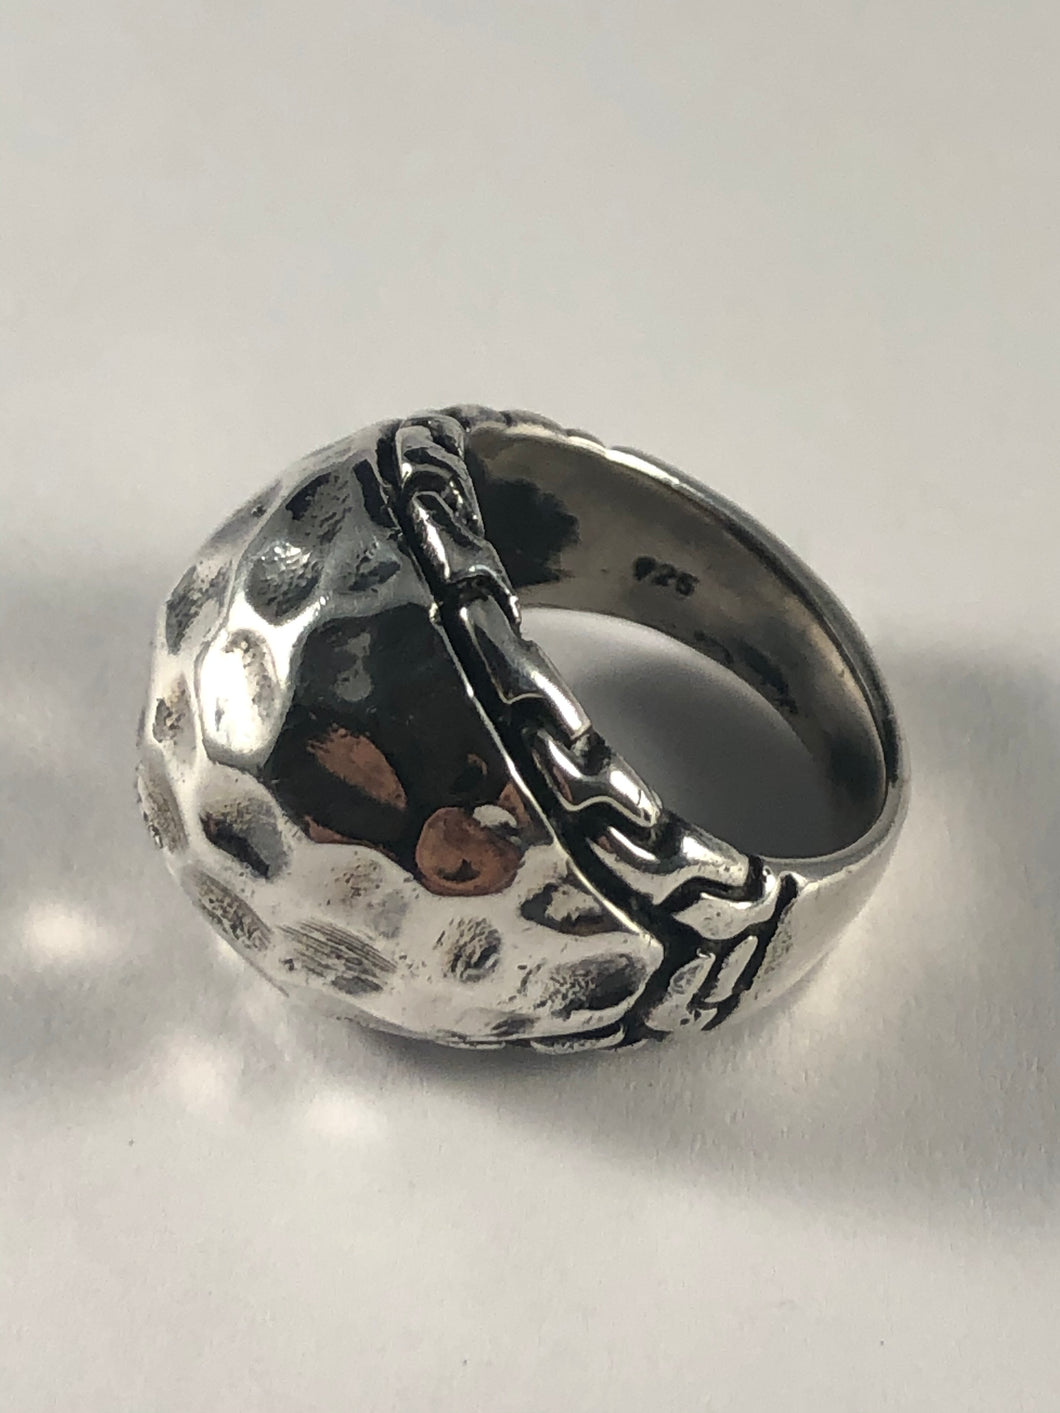 Sterling Silver Ring SR00006